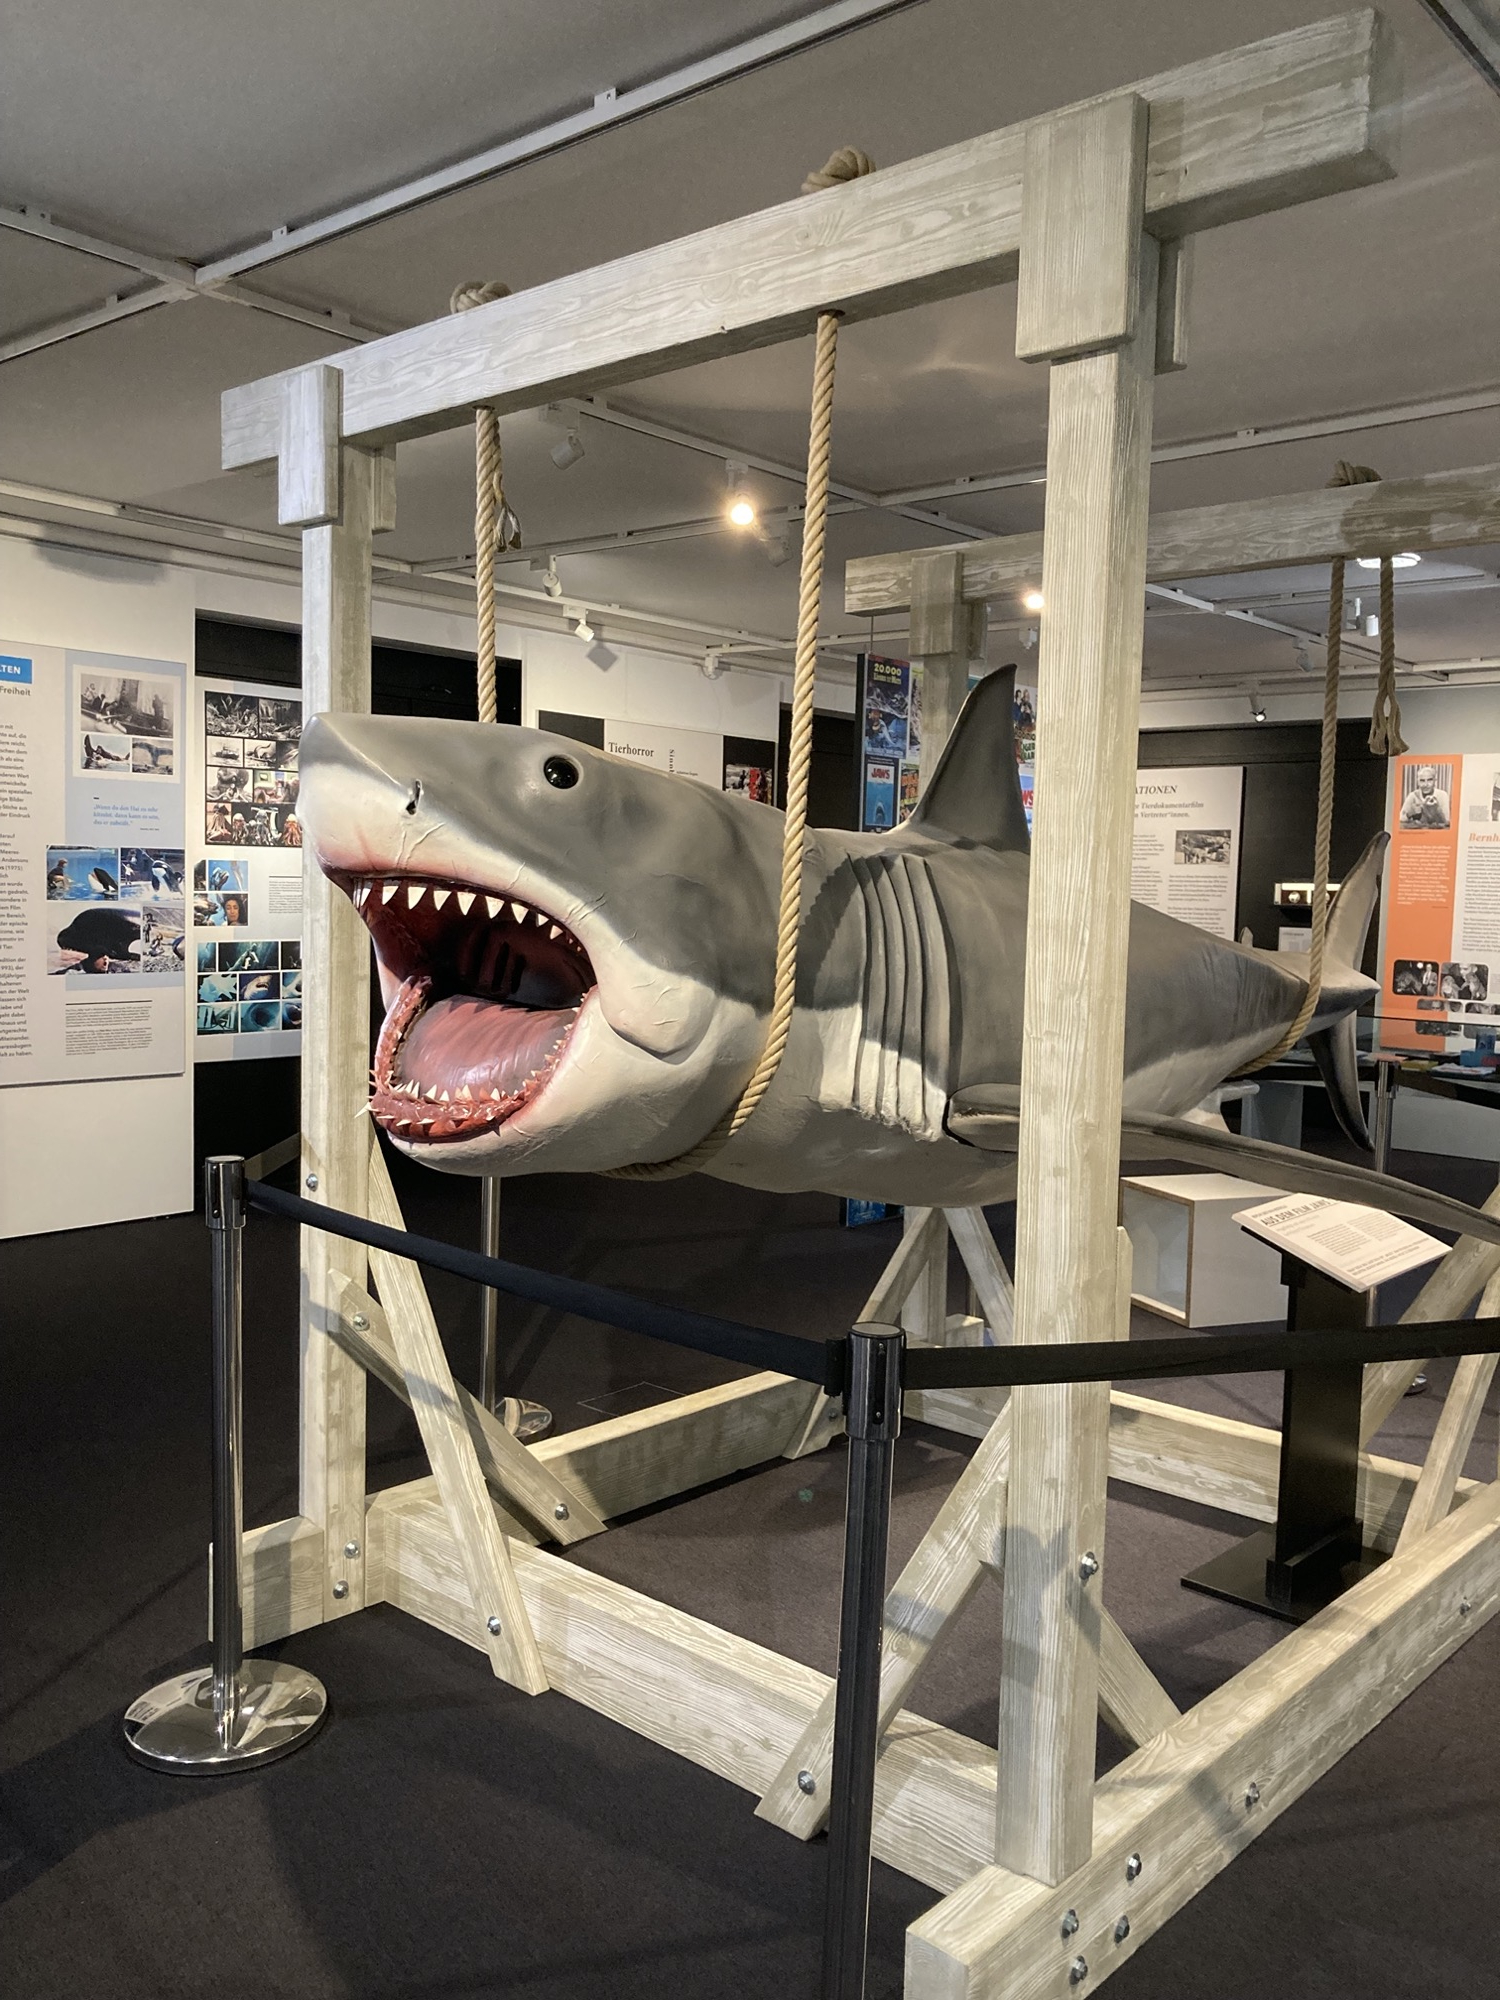 Bruce, der weiße Hai, mittels Seilen aufgehängt an einer Holzkonstruktion, das weit geöffnete Maul mit einer Reihe spitzer Zähne befindet sich ungefähr in der Kopfhöhe einer danebenstehenden Person